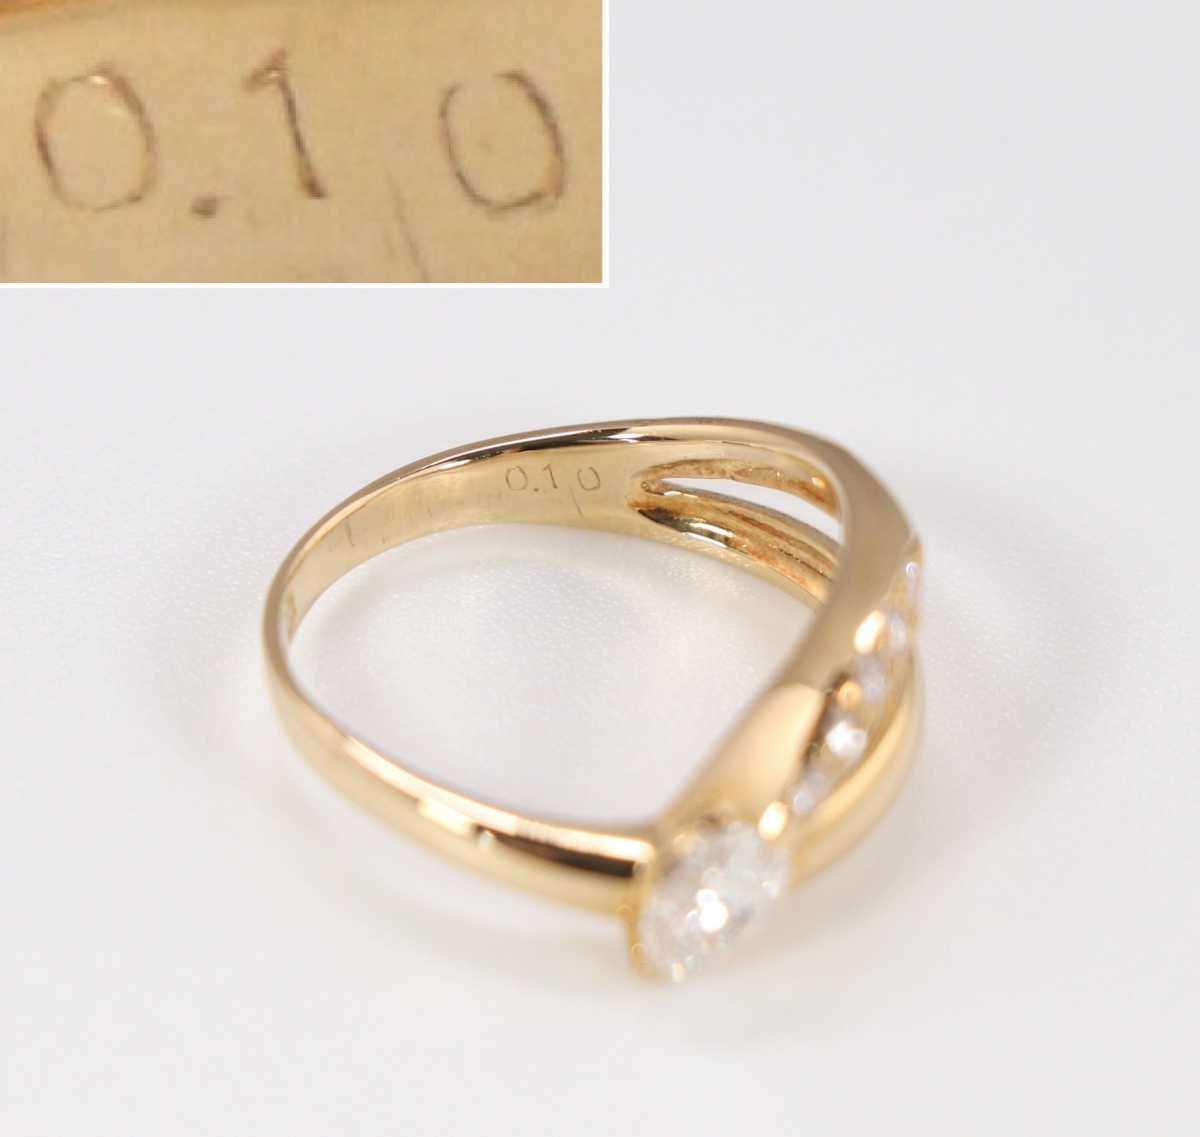 CAK08 / セイコージュエリー K18 ダイヤモンドリング 0.38ct 0.10ct 12号 / SI1 VS2 燕刻印 服部時計店 SEIKO 指輪 ジュエリー 18金